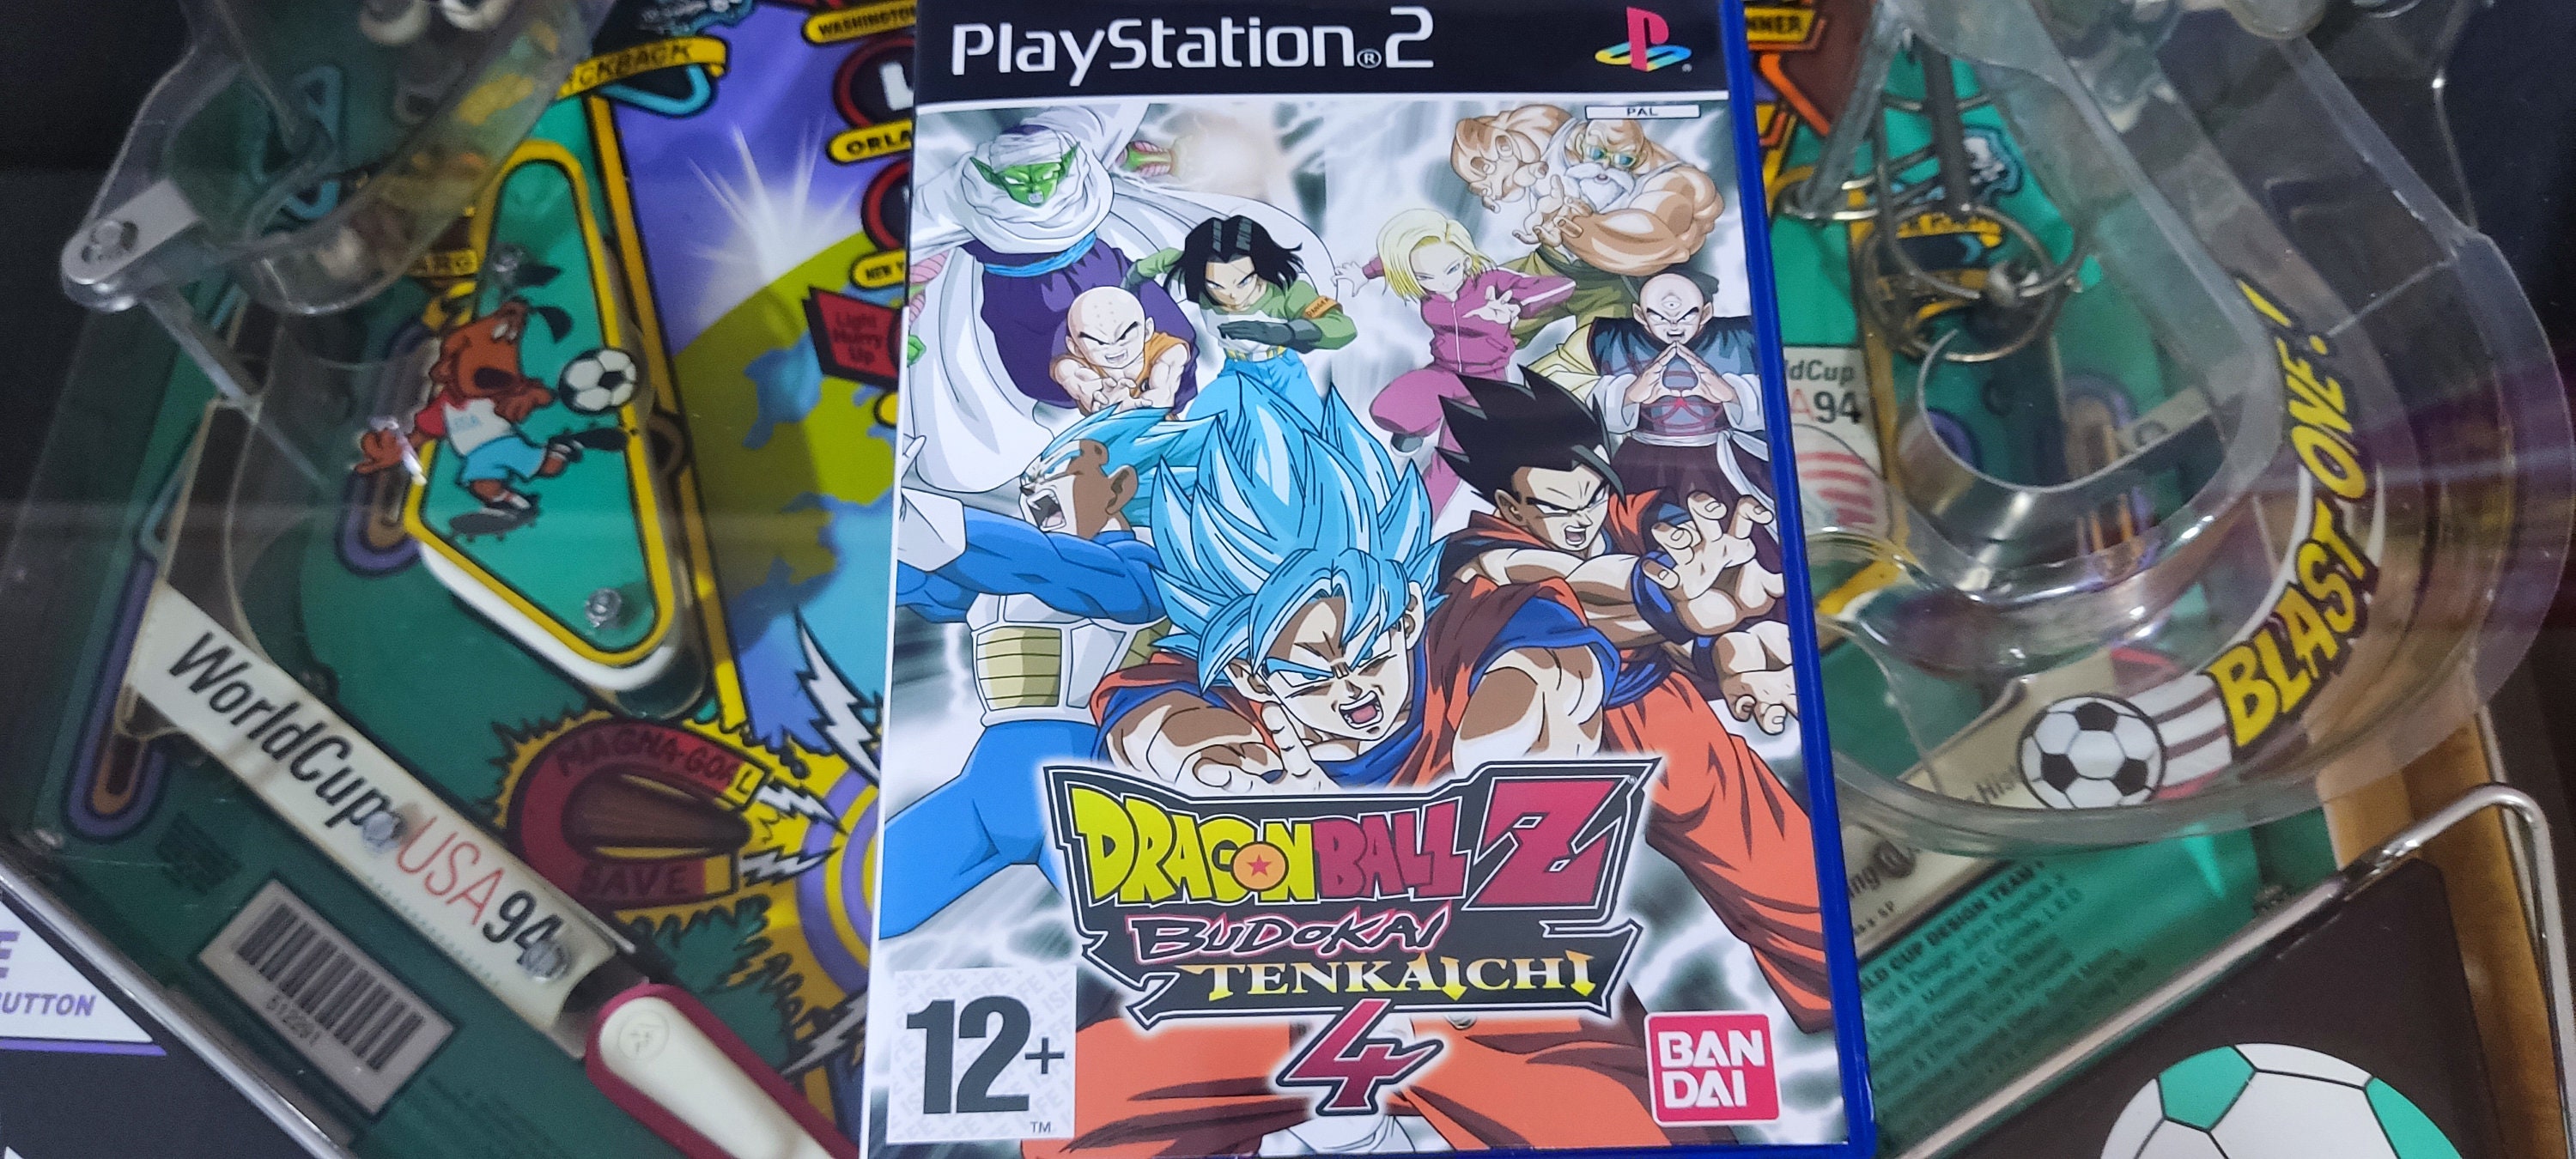 Dragonball Z Budokai Tenkaichi 4 By Bandai Namco Game Cover Home Decor  Poster Canvas - Mugteeco